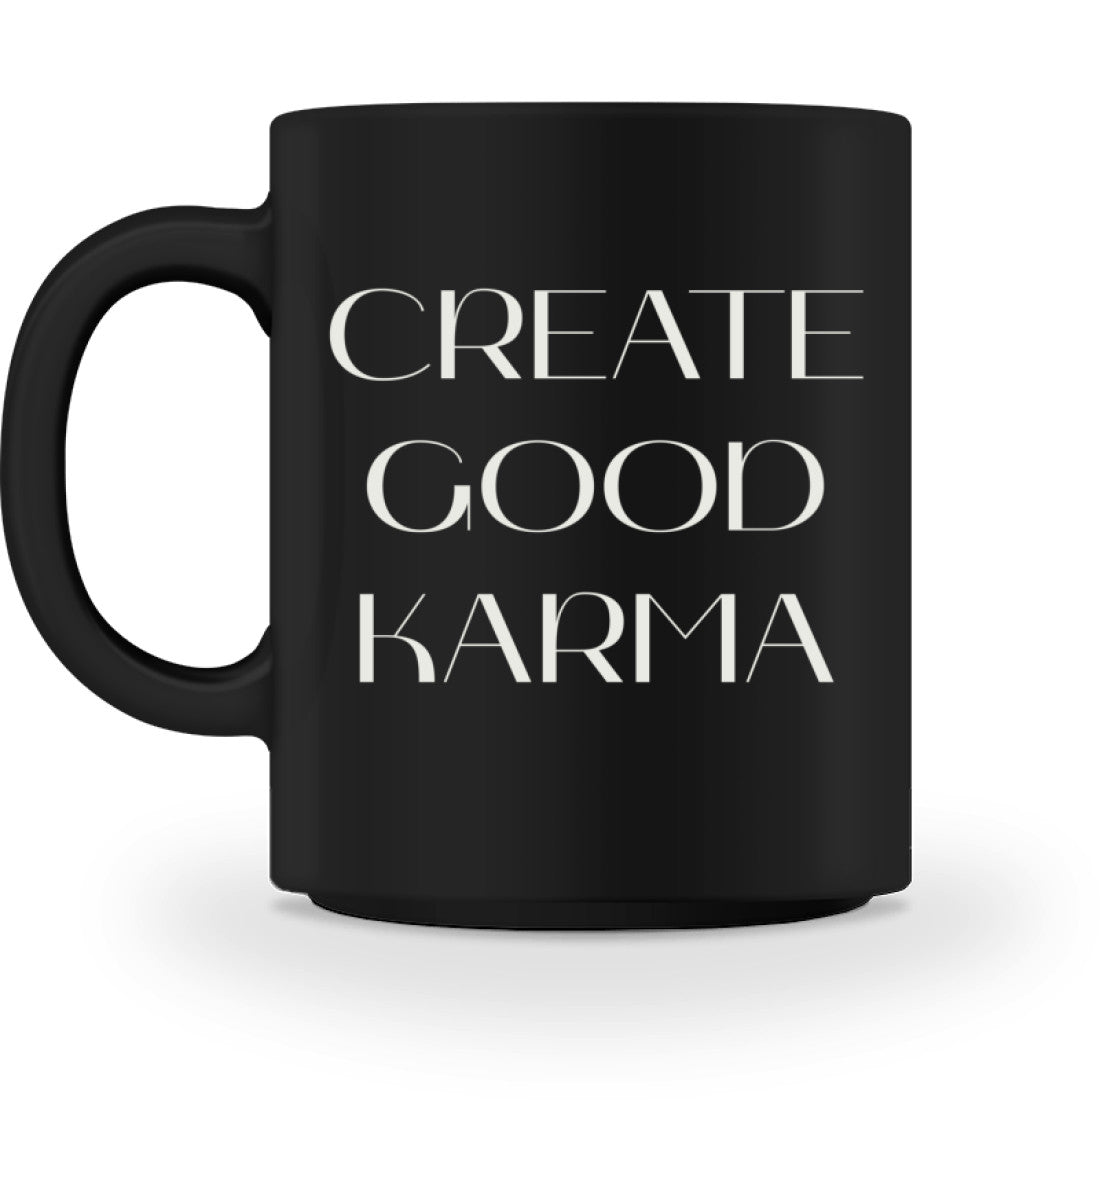 good karma l yoga tasse l tasse l schöne geschenkideen l ökologische geschenke nachhaltig einkaufen